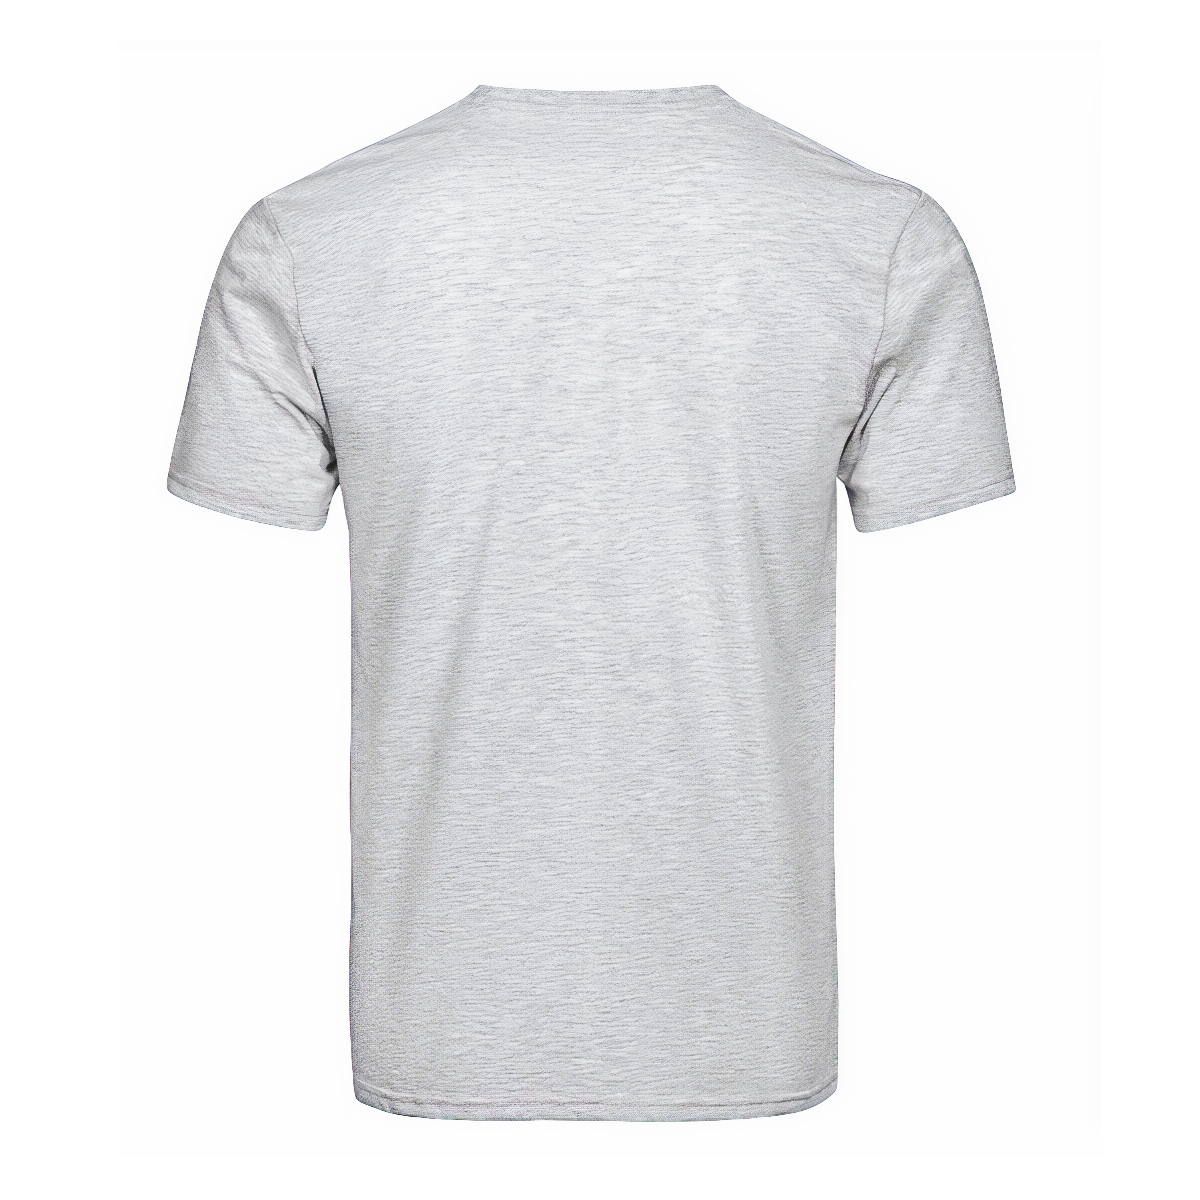 Whitelaw Tartan Crest T-shirt - I'm not yelling style